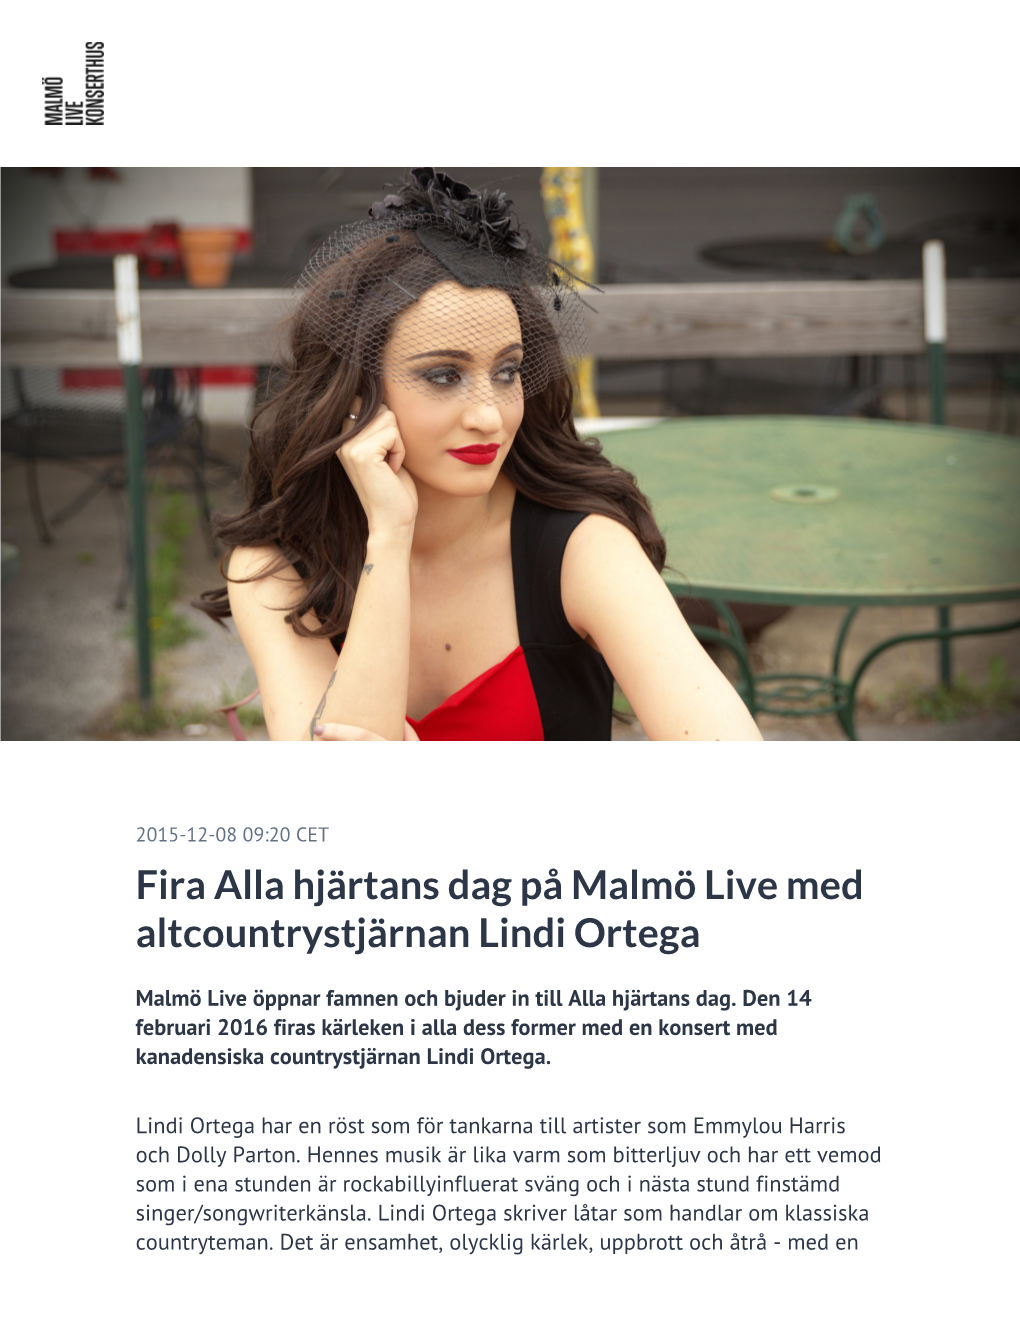 Fira Alla Hjärtans Dag På Malmö Live Med Altcountrystjärnan Lindi Ortega